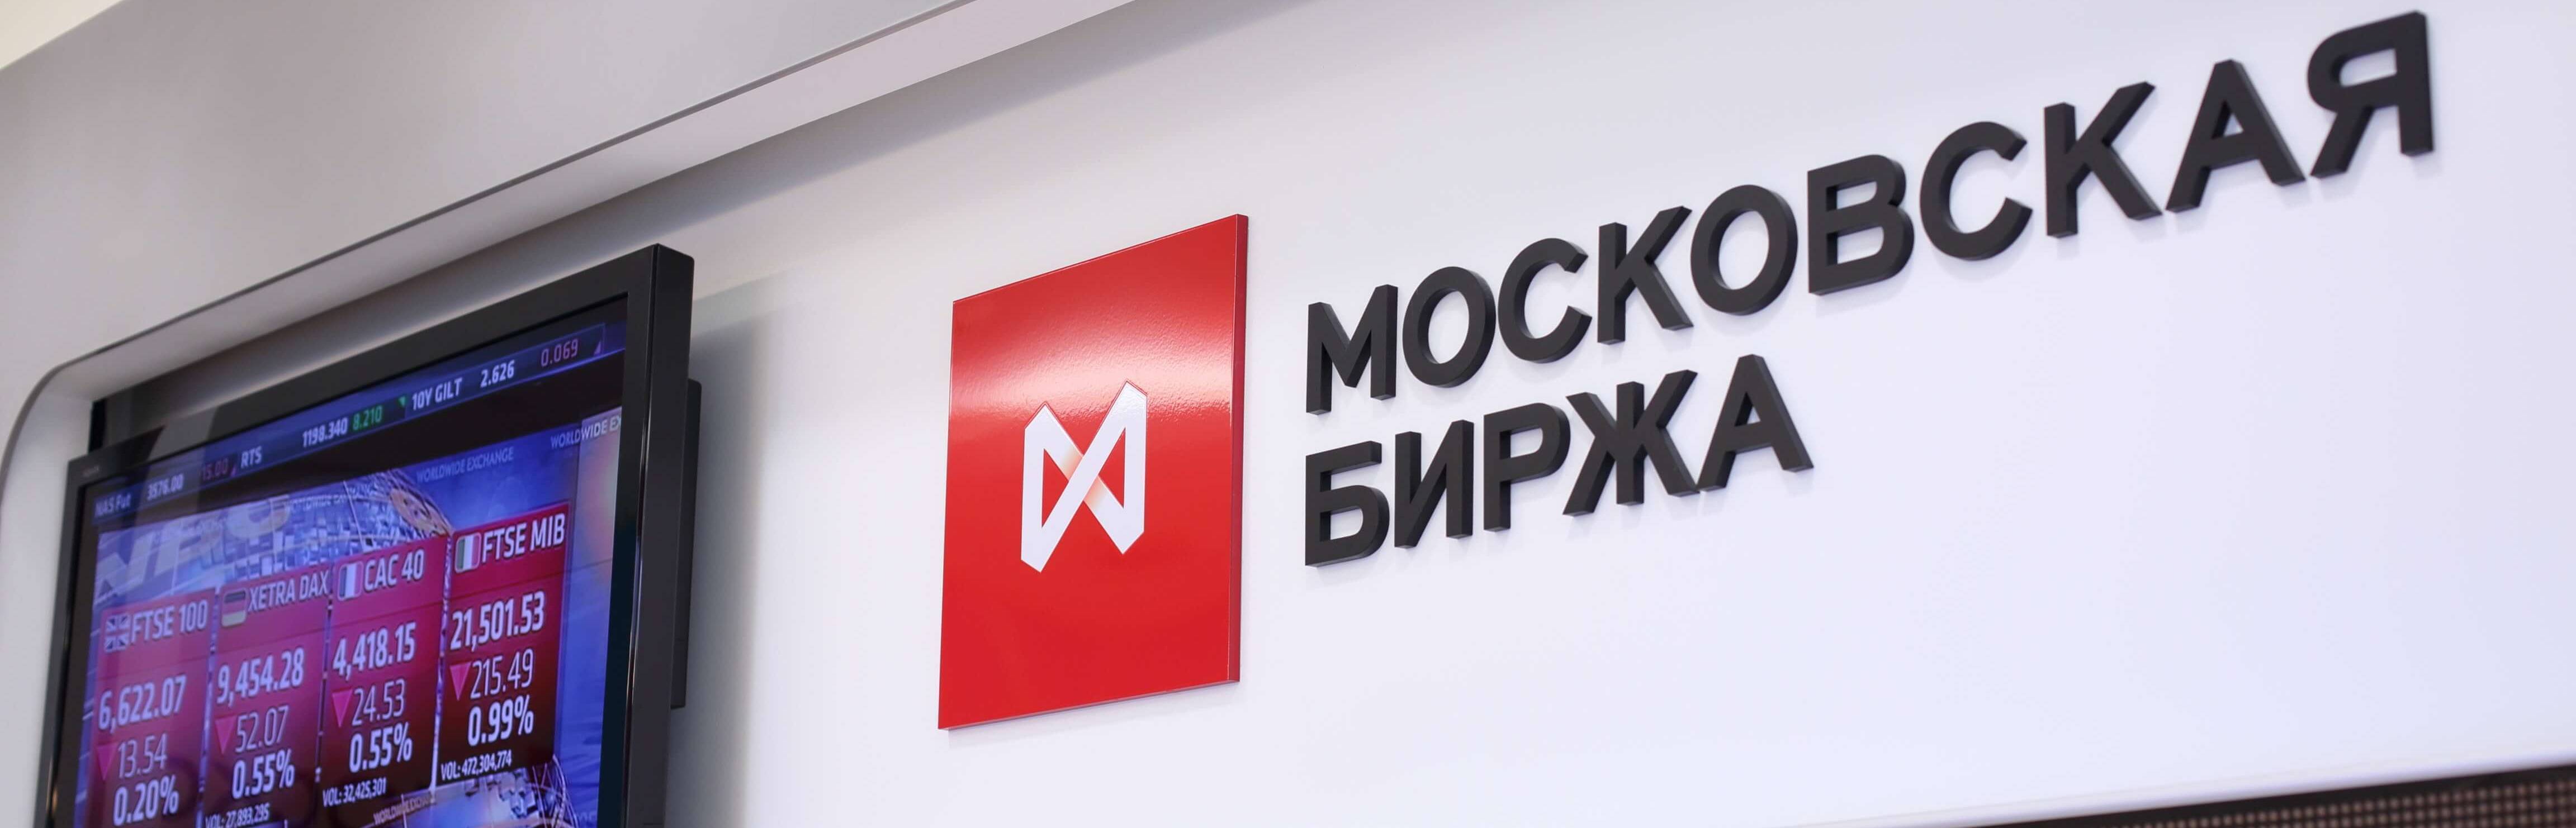 Московская биржа (moex) – структура, активы и время торгов